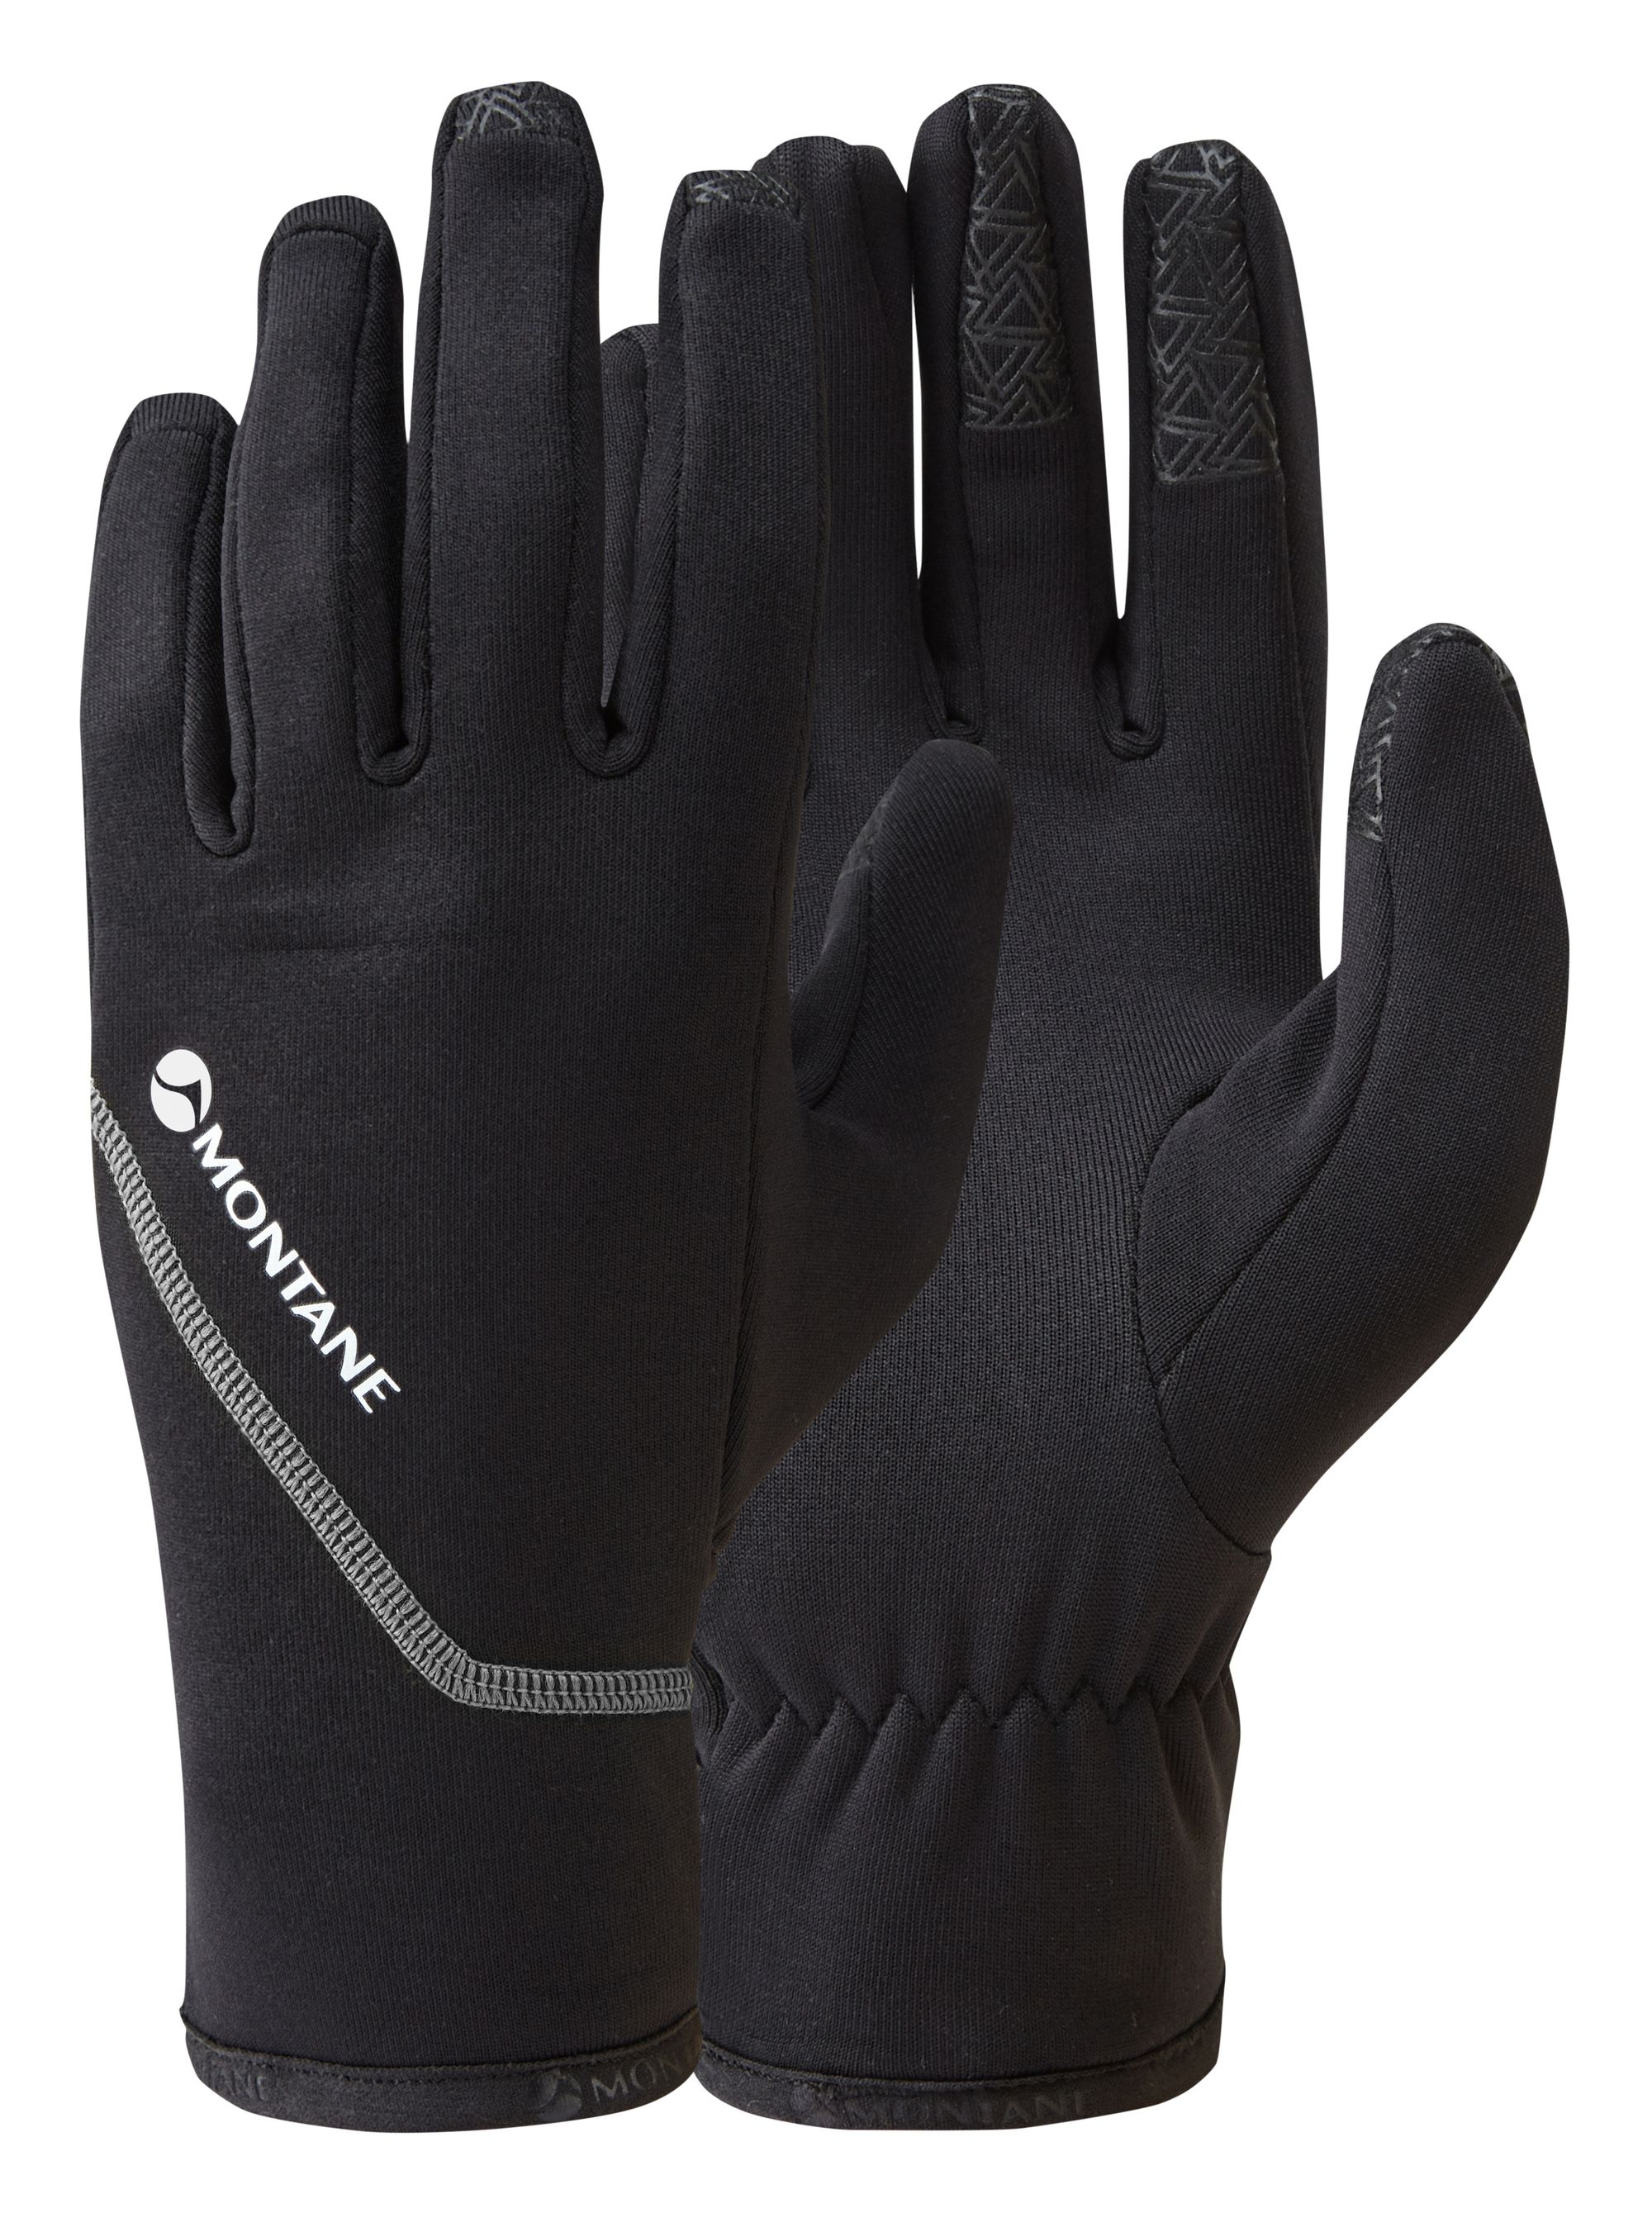 Montane POWER STRETCH PRO GLOVE-BLACK-S pánské rukavice černé